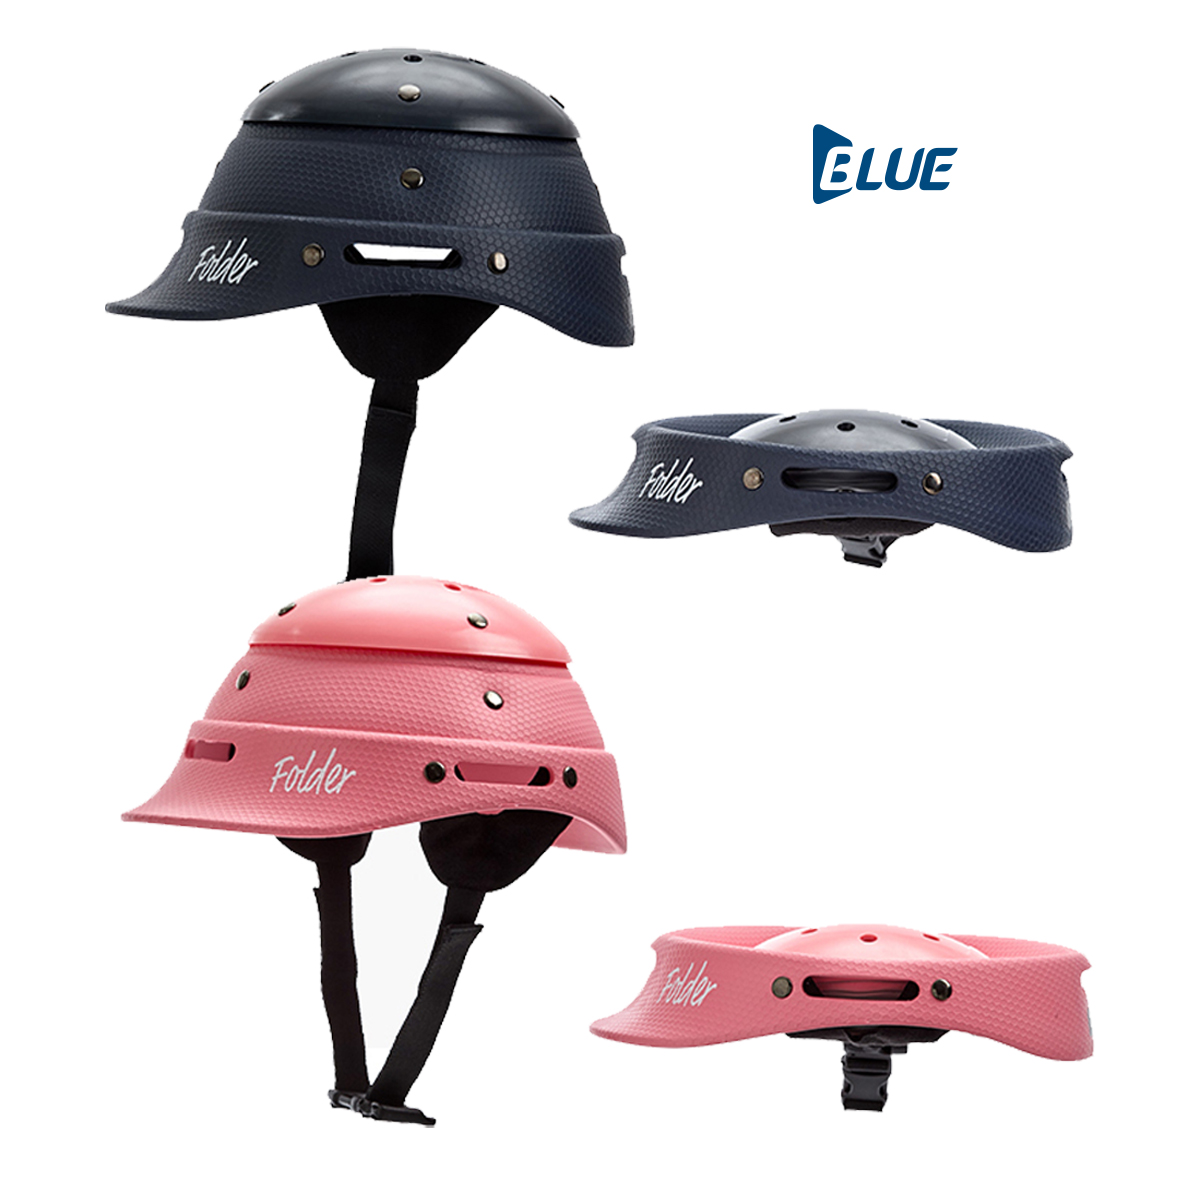 블루 킥보드(전기자전거) 헬멧